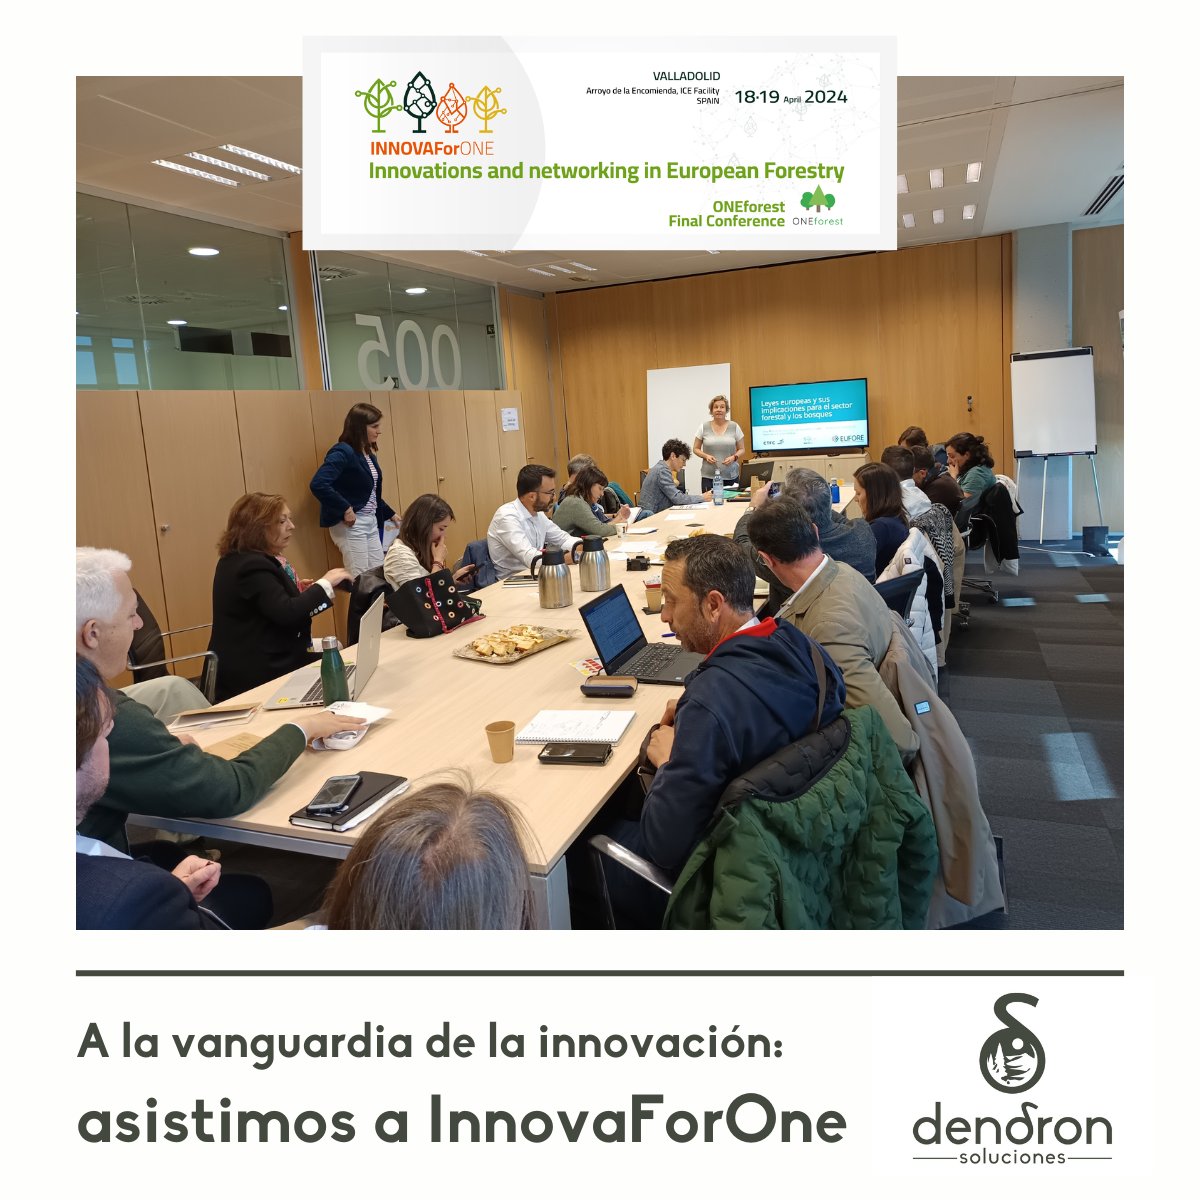 ✨ ¡Hemos participado en INNOVAForOne!

El pasado 18 y 19 de abril, Valladolid se convirtió en el epicentro de la innovación forestal europea.